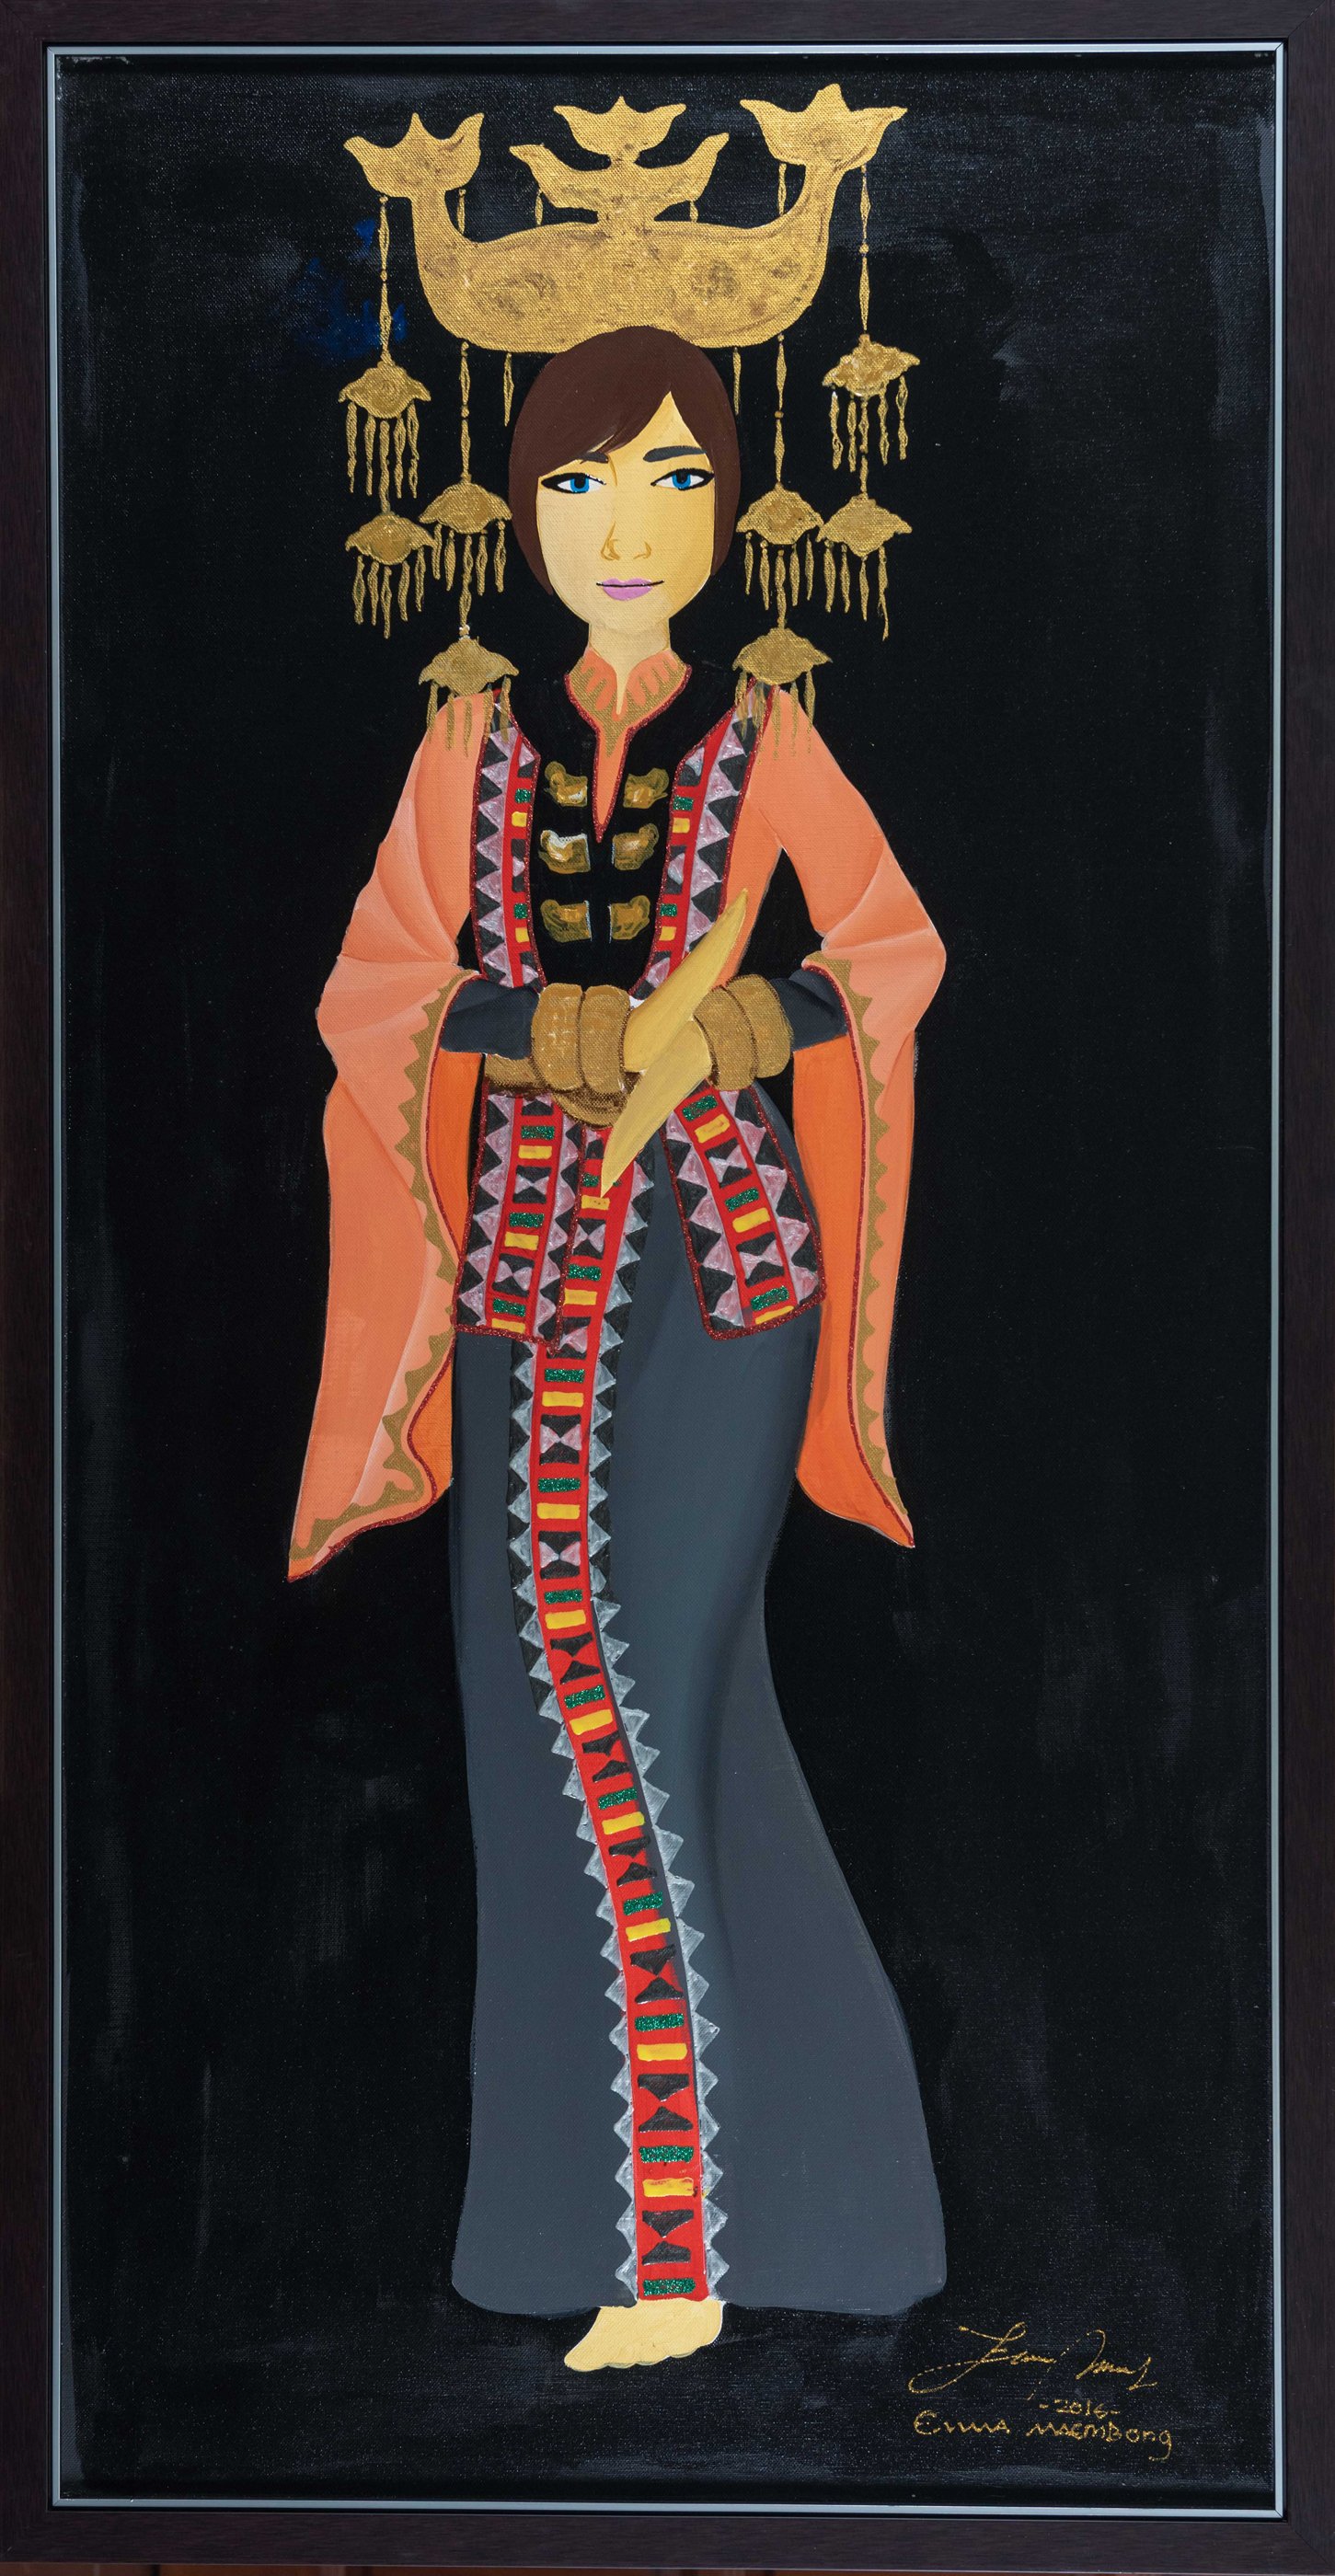 艾玛马恩邦作品《Kostum Bajau》。